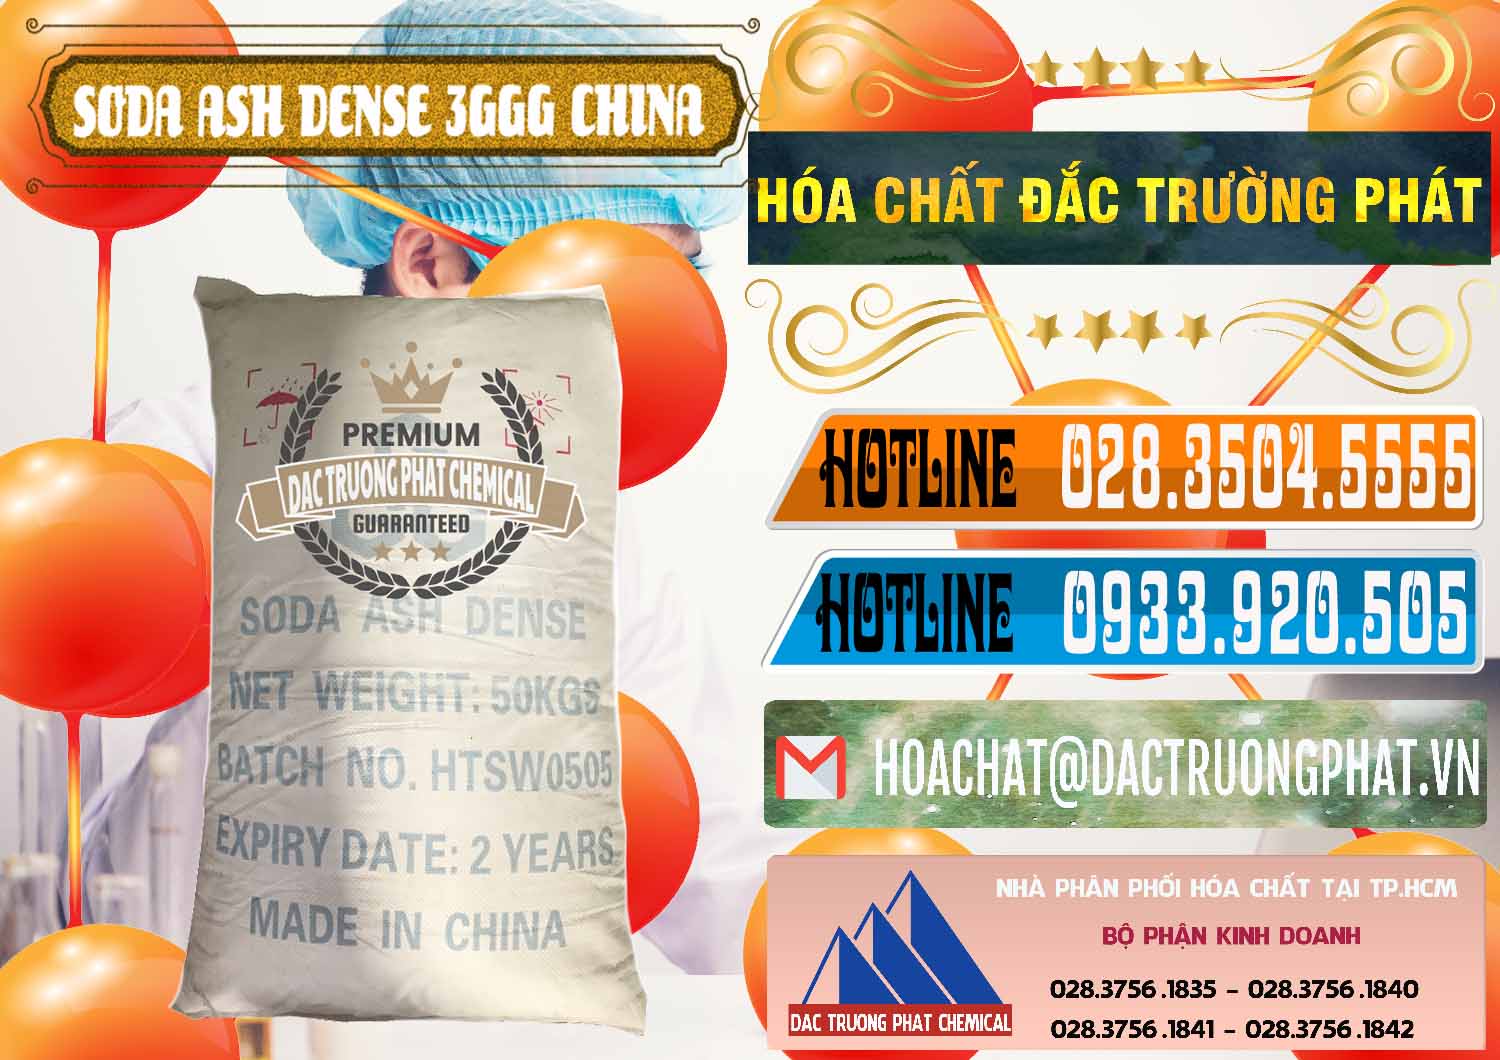 Đơn vị bán & cung ứng Soda Ash Dense - NA2CO3 3GGG Trung Quốc China - 0335 - Công ty phân phối _ cung cấp hóa chất tại TP.HCM - stmp.net